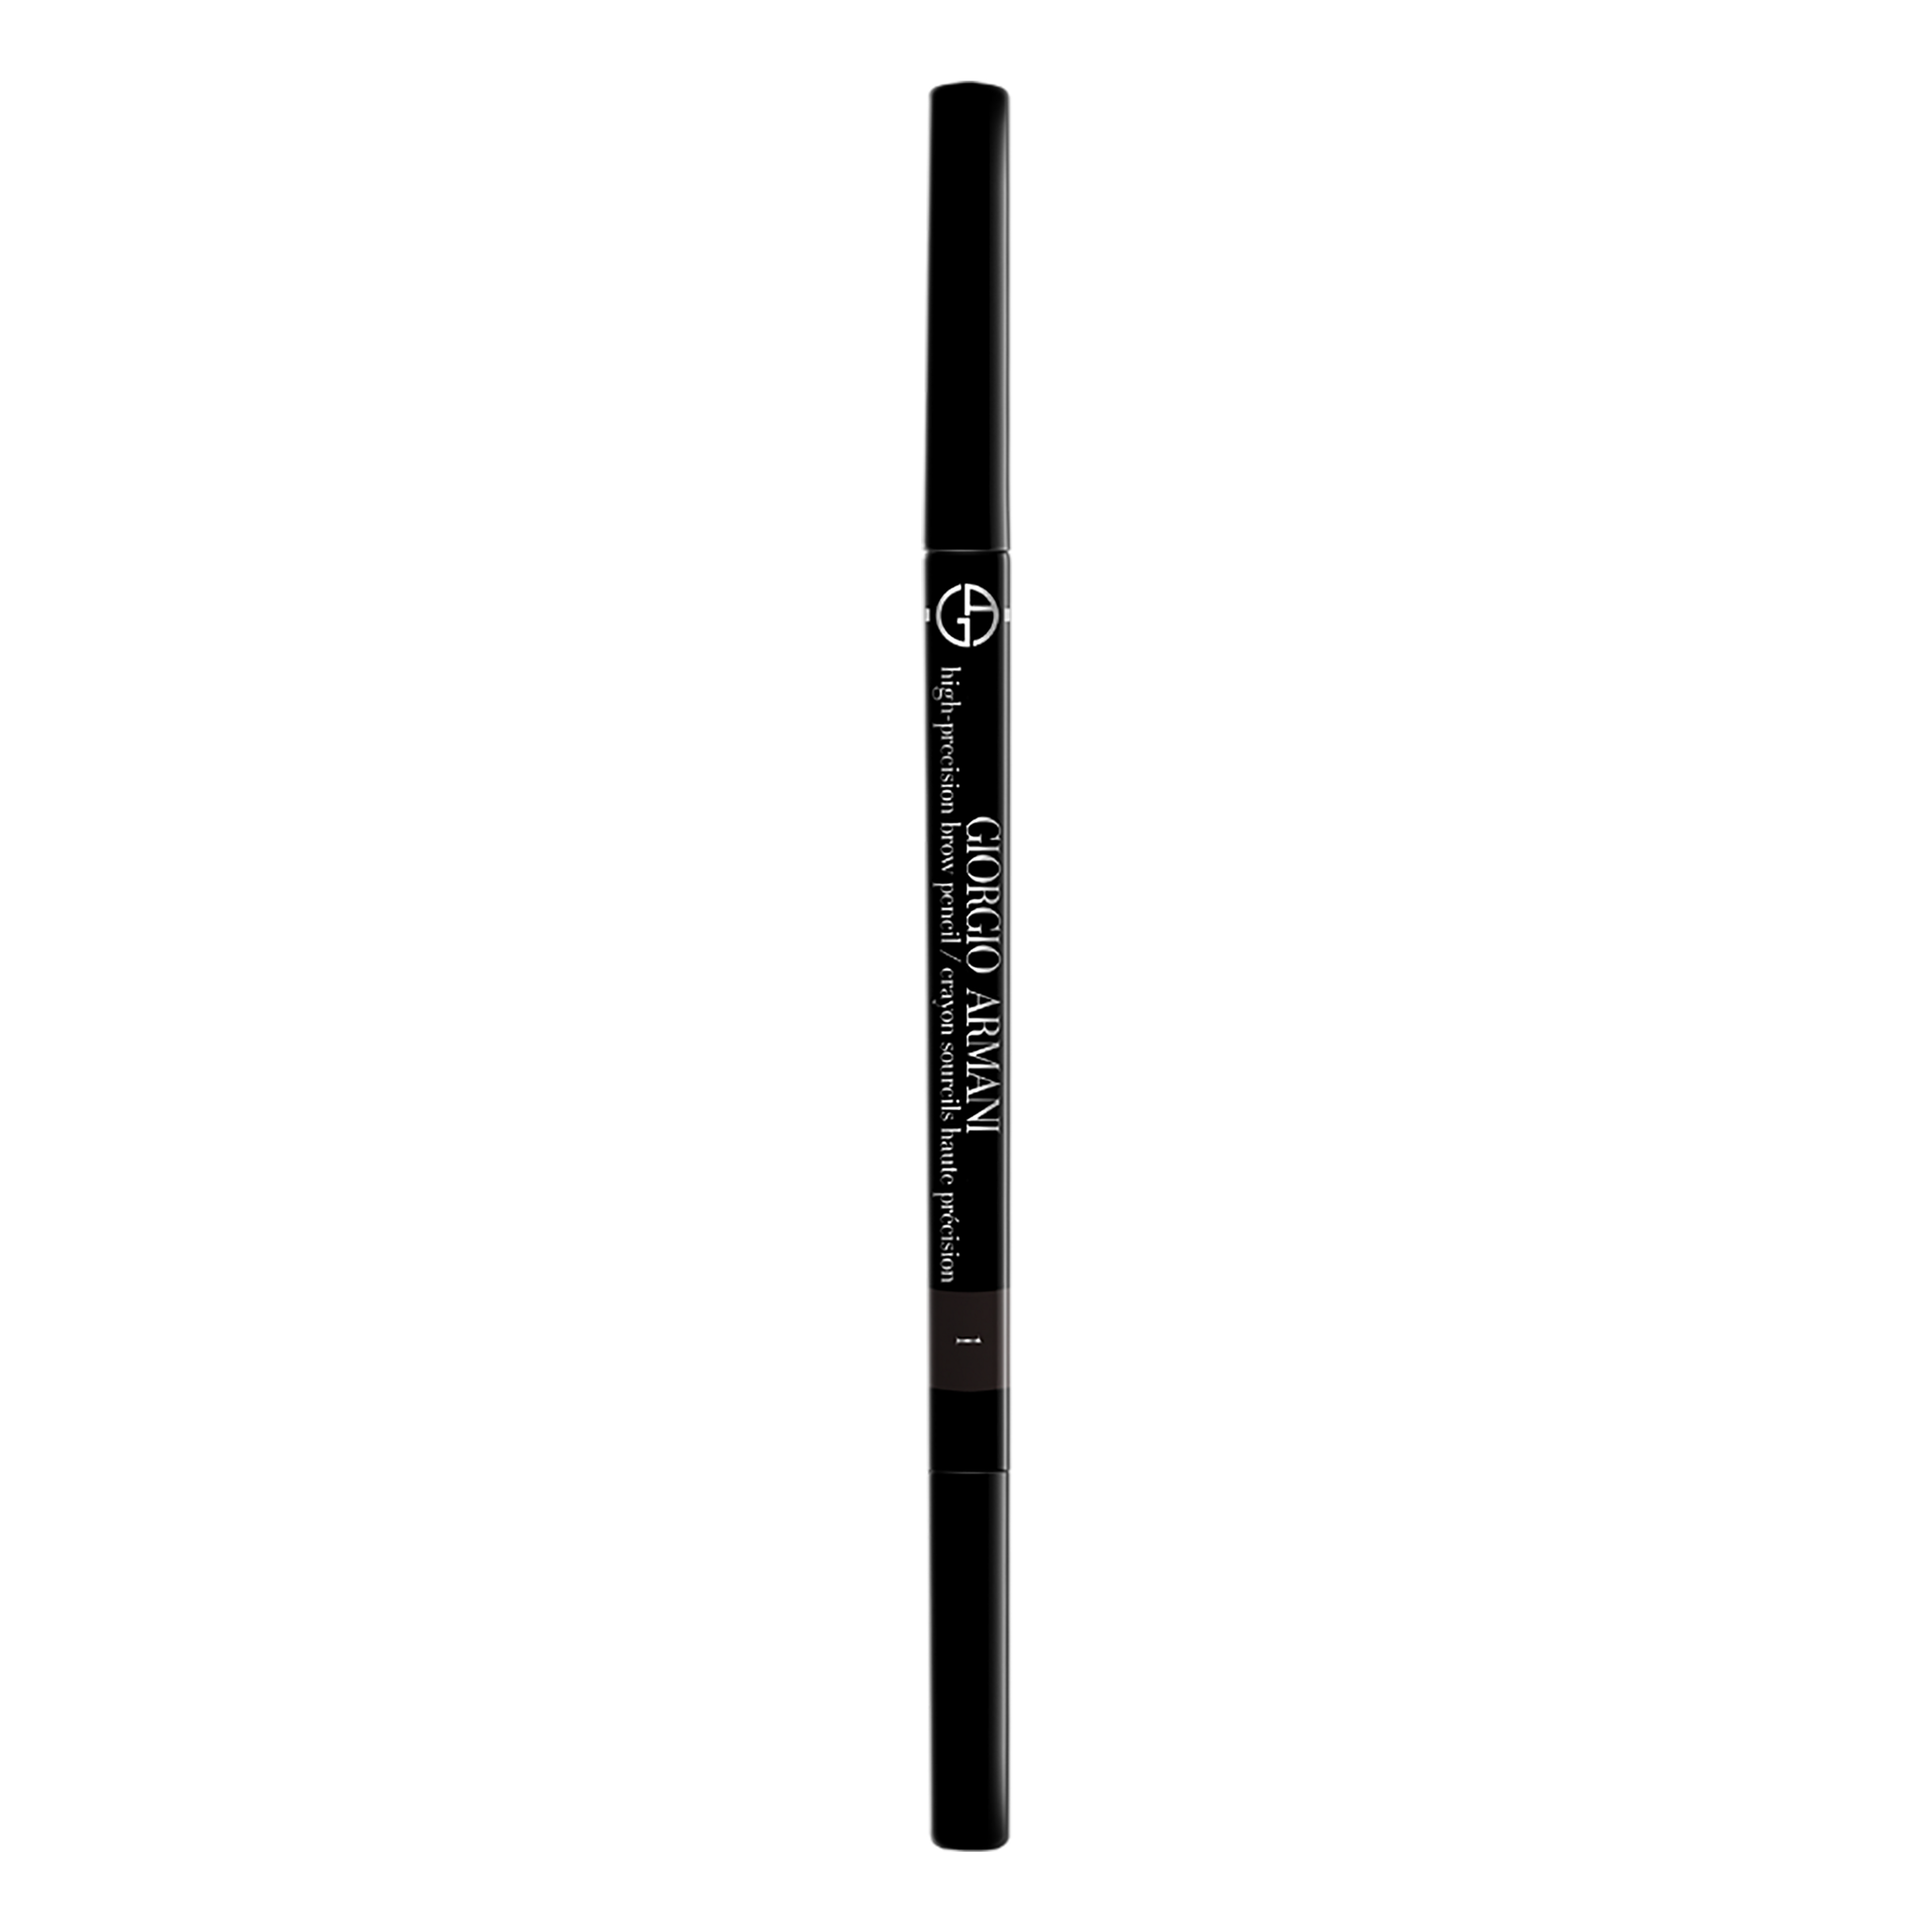 Armani High Precision Brow Pencil Matita Per
 Sopracciglia 1